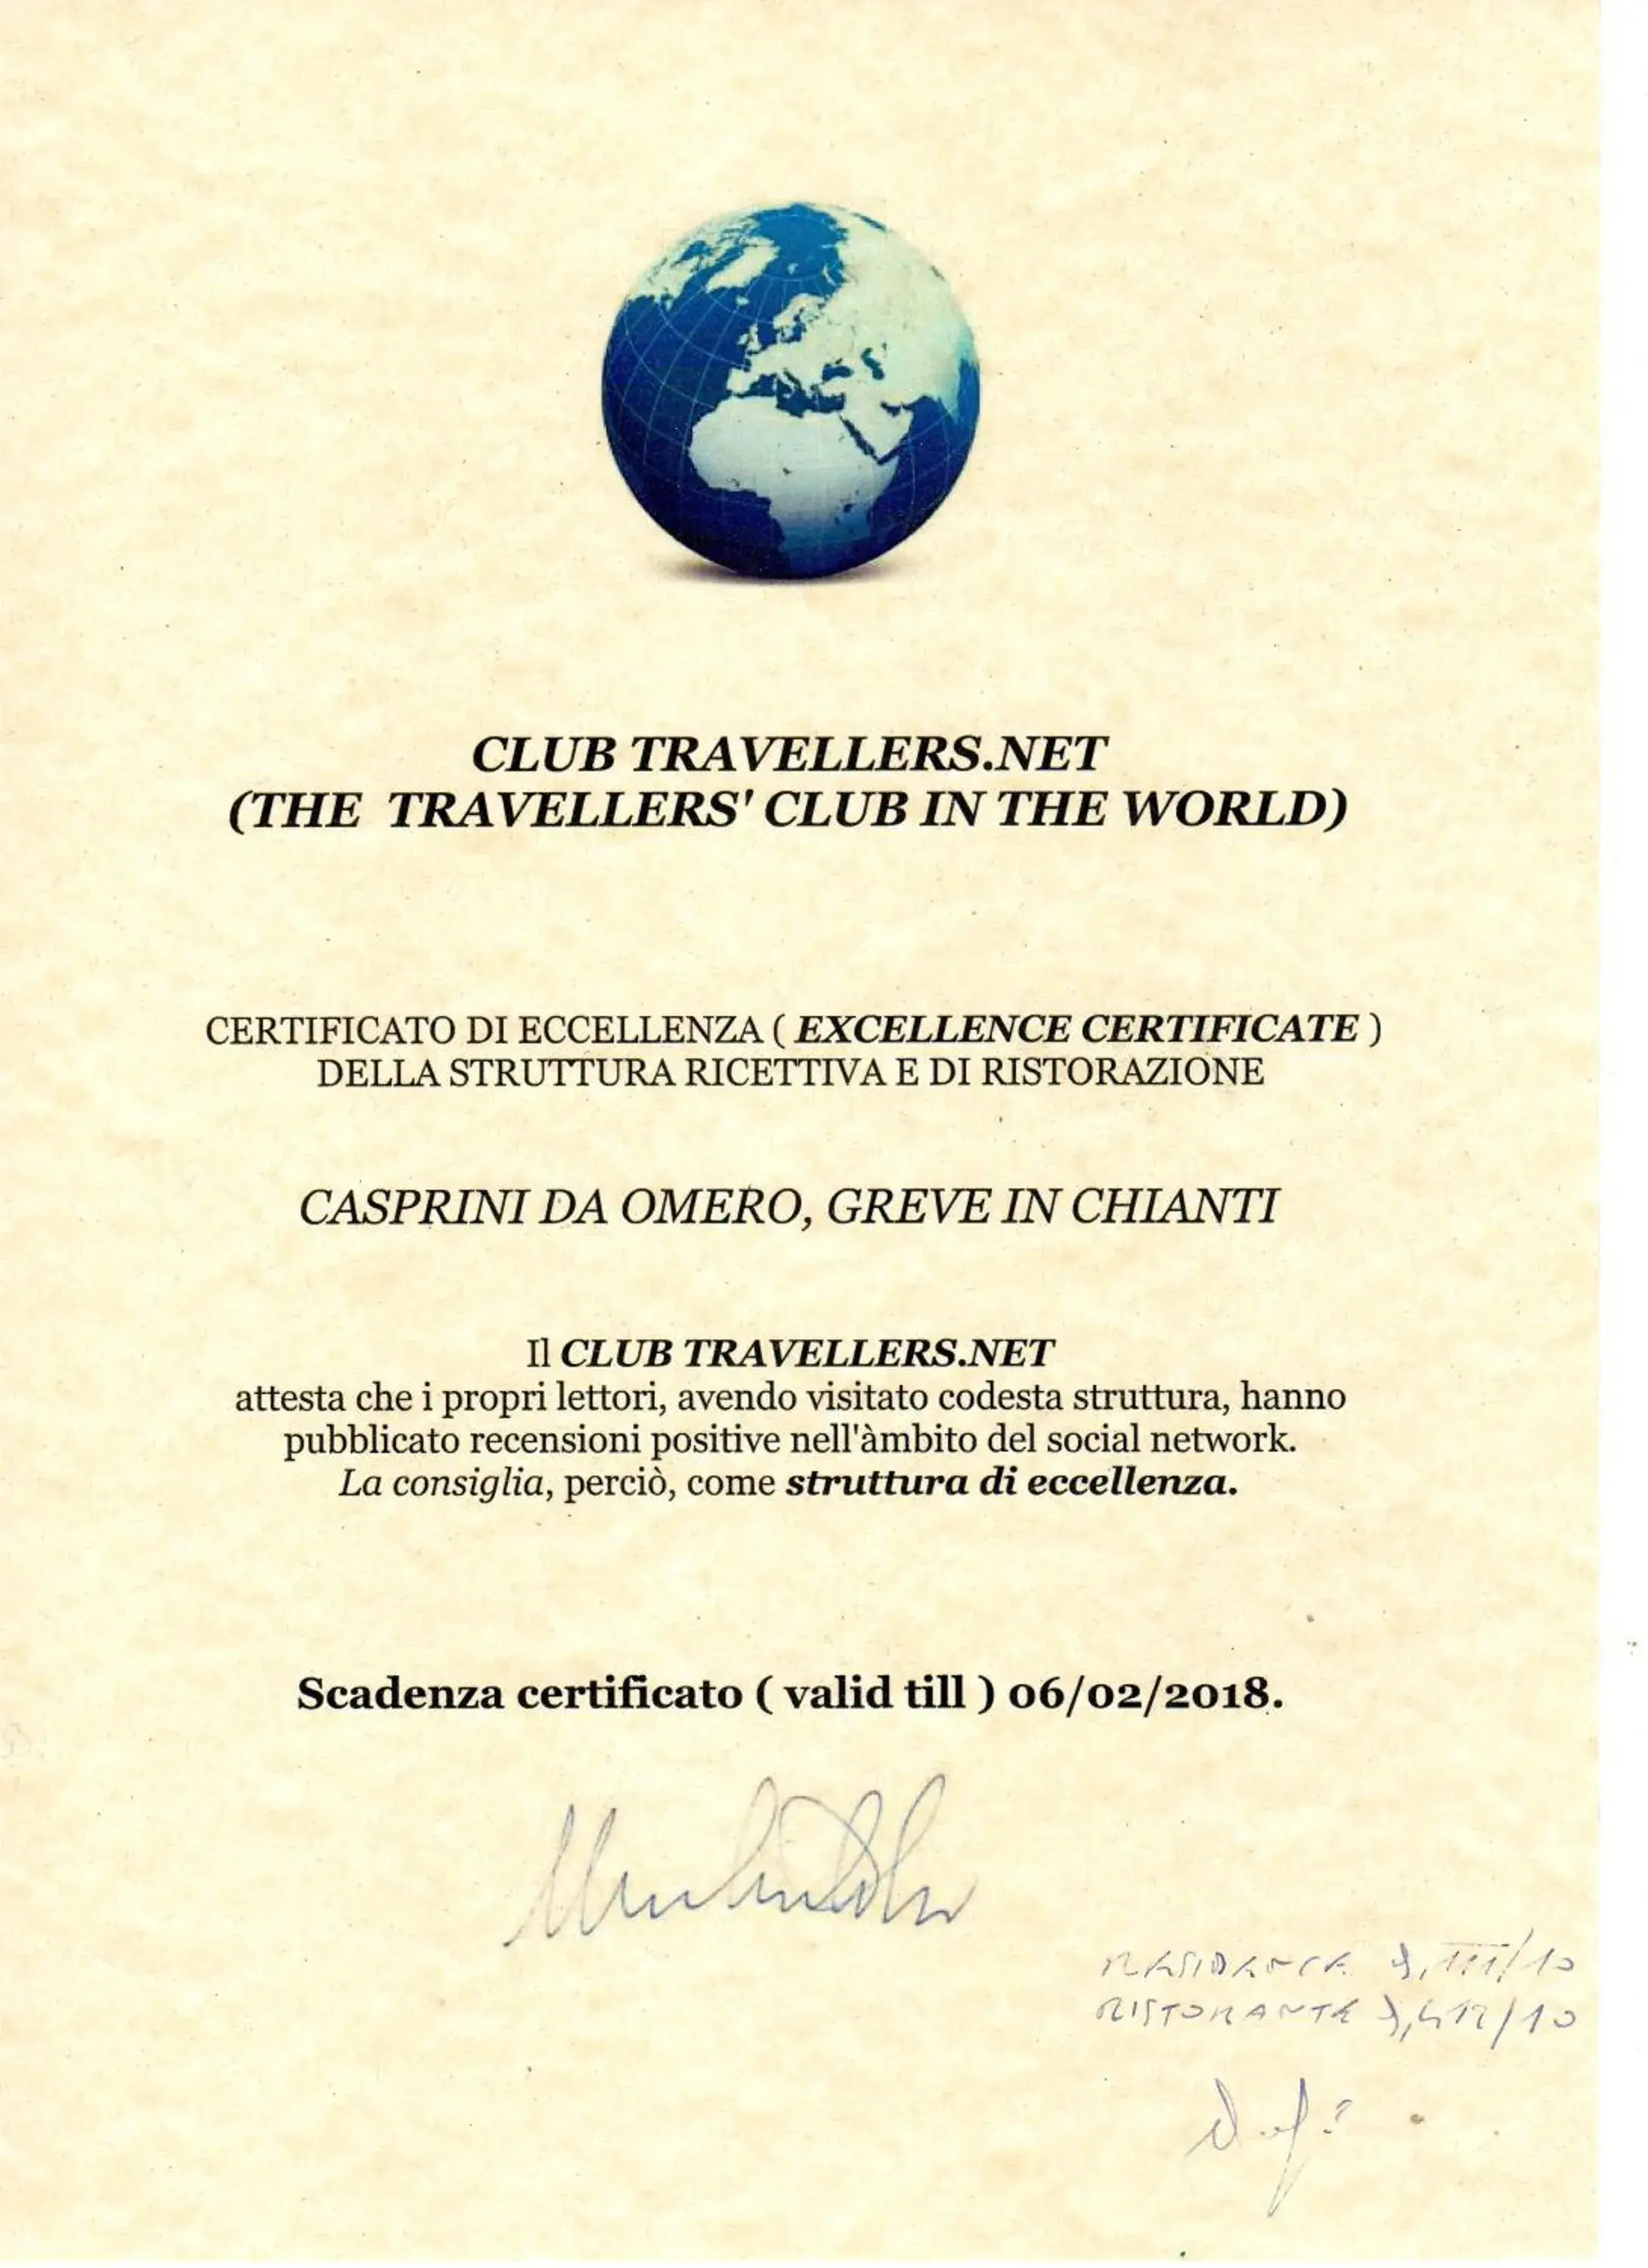 Certificate/Award in Residence Casprini da Omero